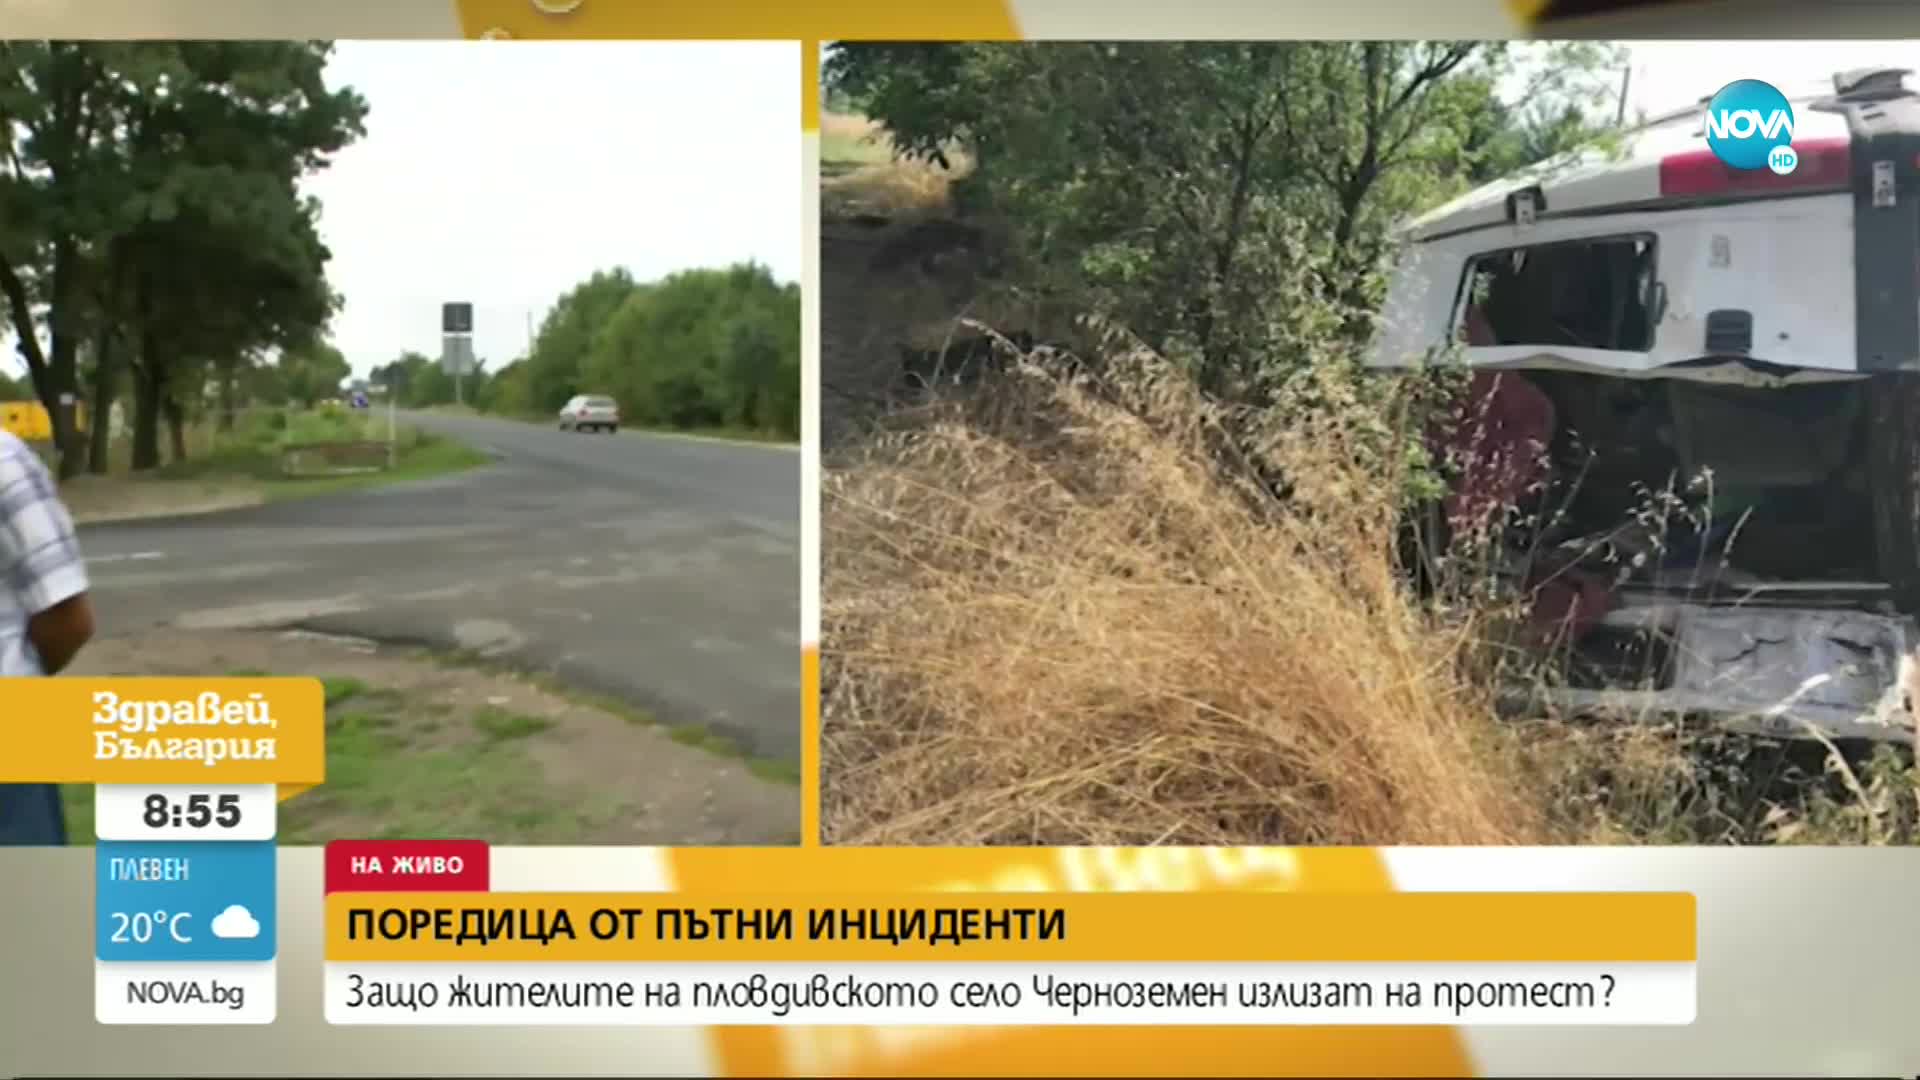 ЗАРАДИ СЕРИЯ КАТАСТРОФИ: Пловдивско село излиза на протест